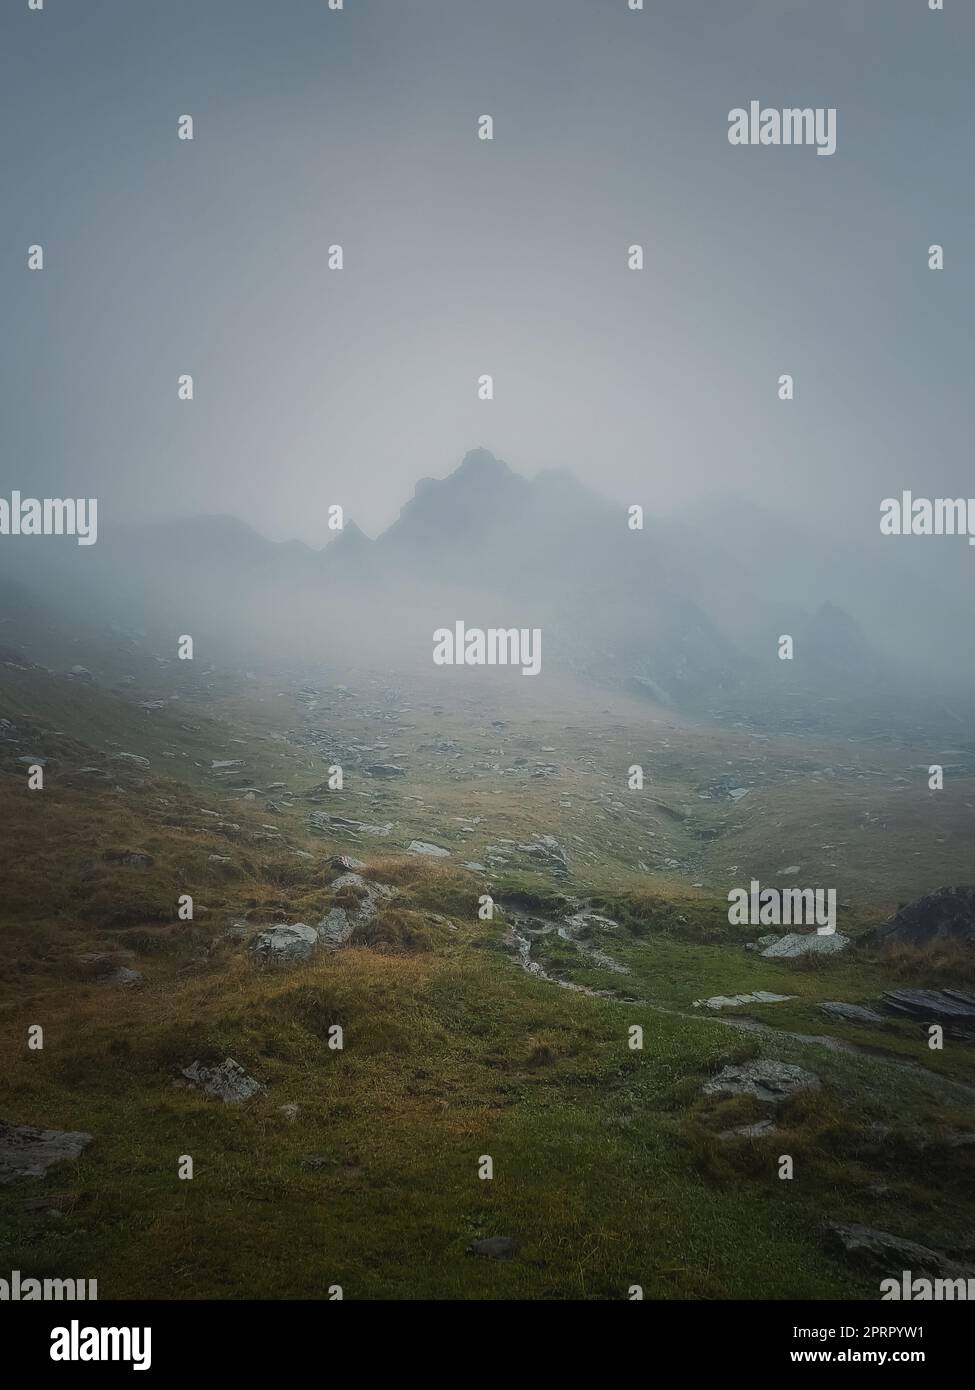 Il picco della Transfagarasan si vede attraverso la fitta nebbia. Scenario piovoso nei monti, escursioni nella nebbia Foto Stock